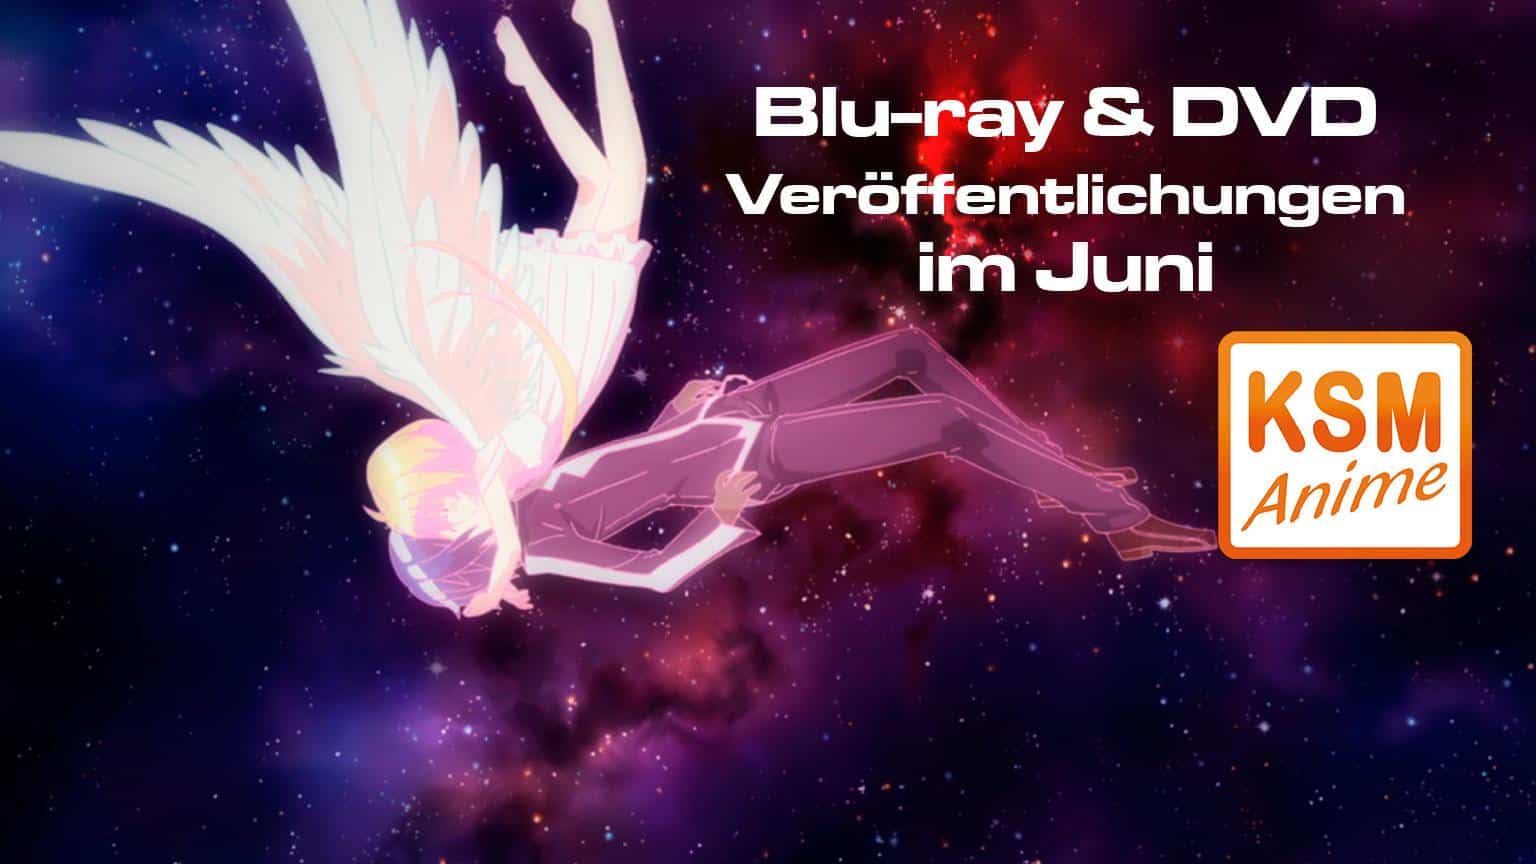 Blu-ray und DVD Veröffentlichungen KSM Anime Juni 2019